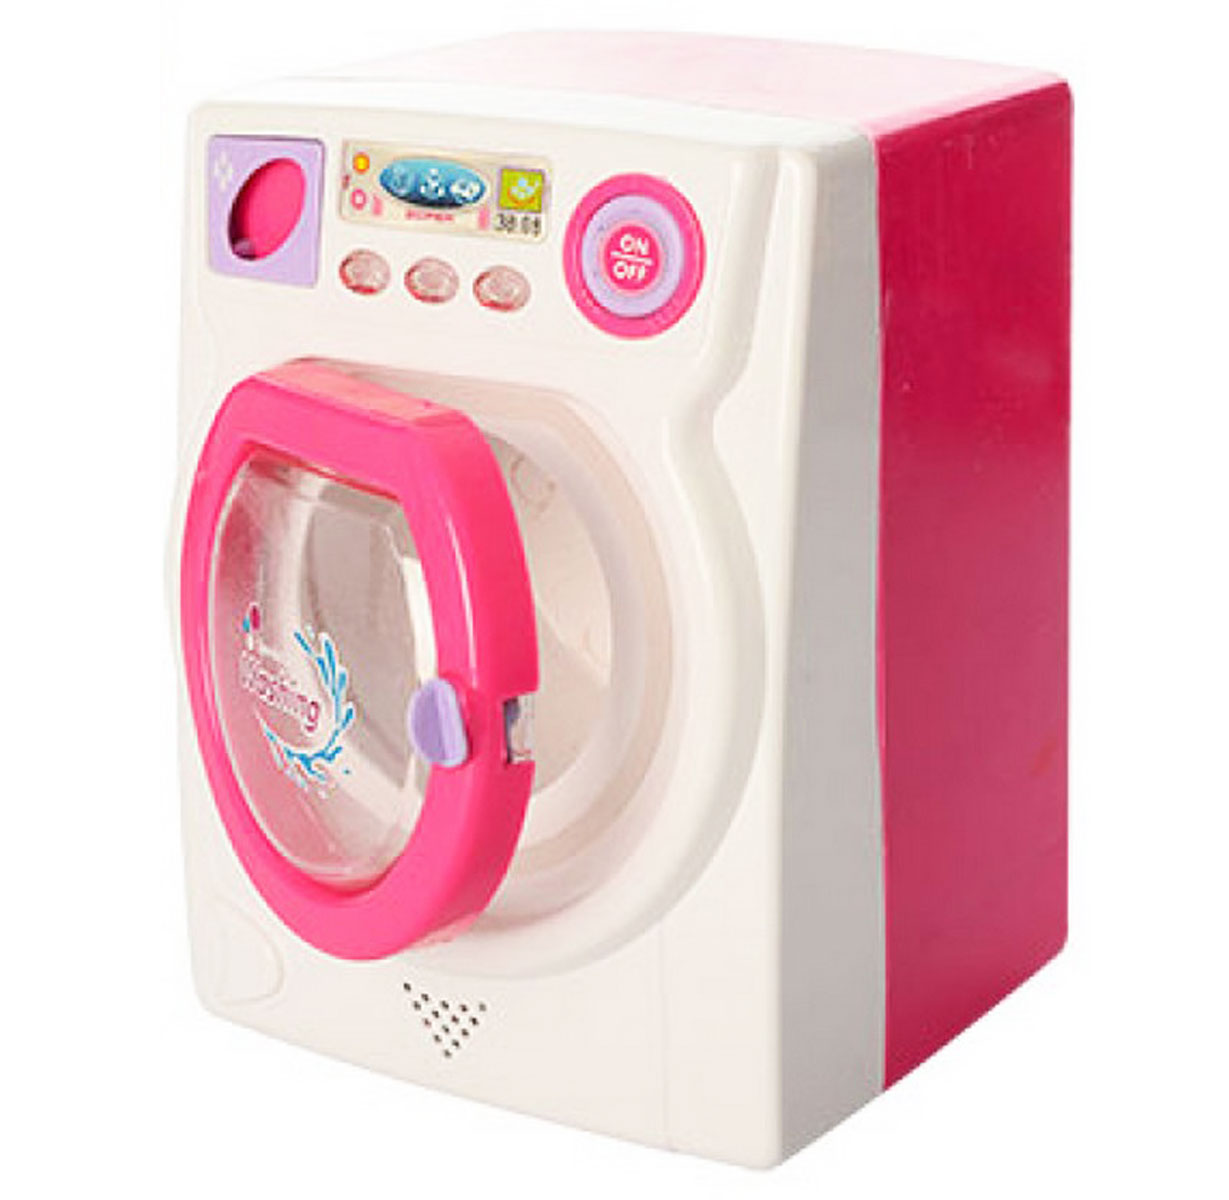 Іграшкова пральна машинка для дітей